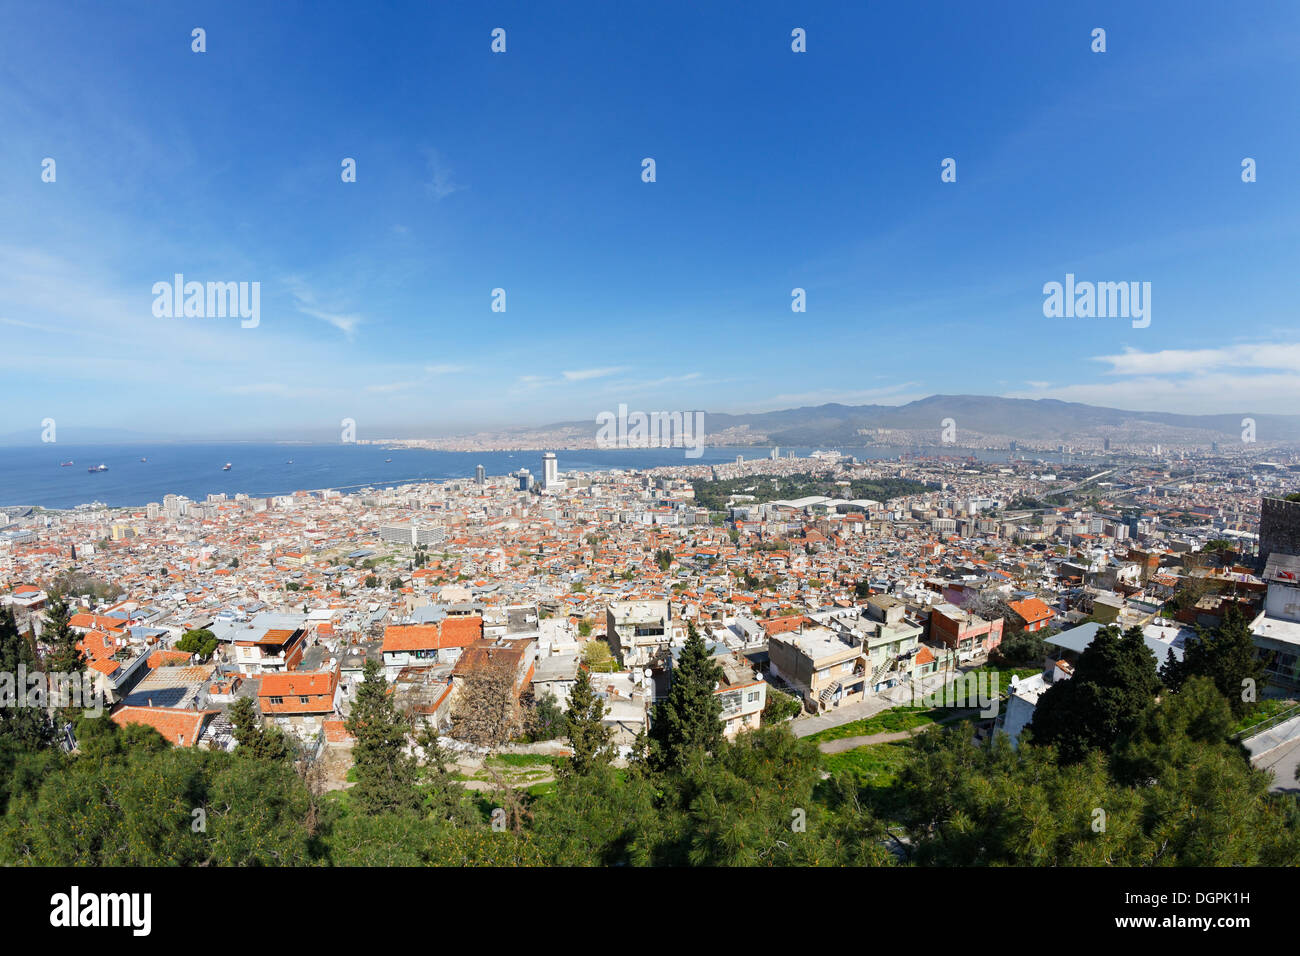 Vista desde el castillo Kadifekale sobre la ciudad, Kadifekale, Izmir, provincia de İzmir, la Región del Egeo, Turquía Foto de stock